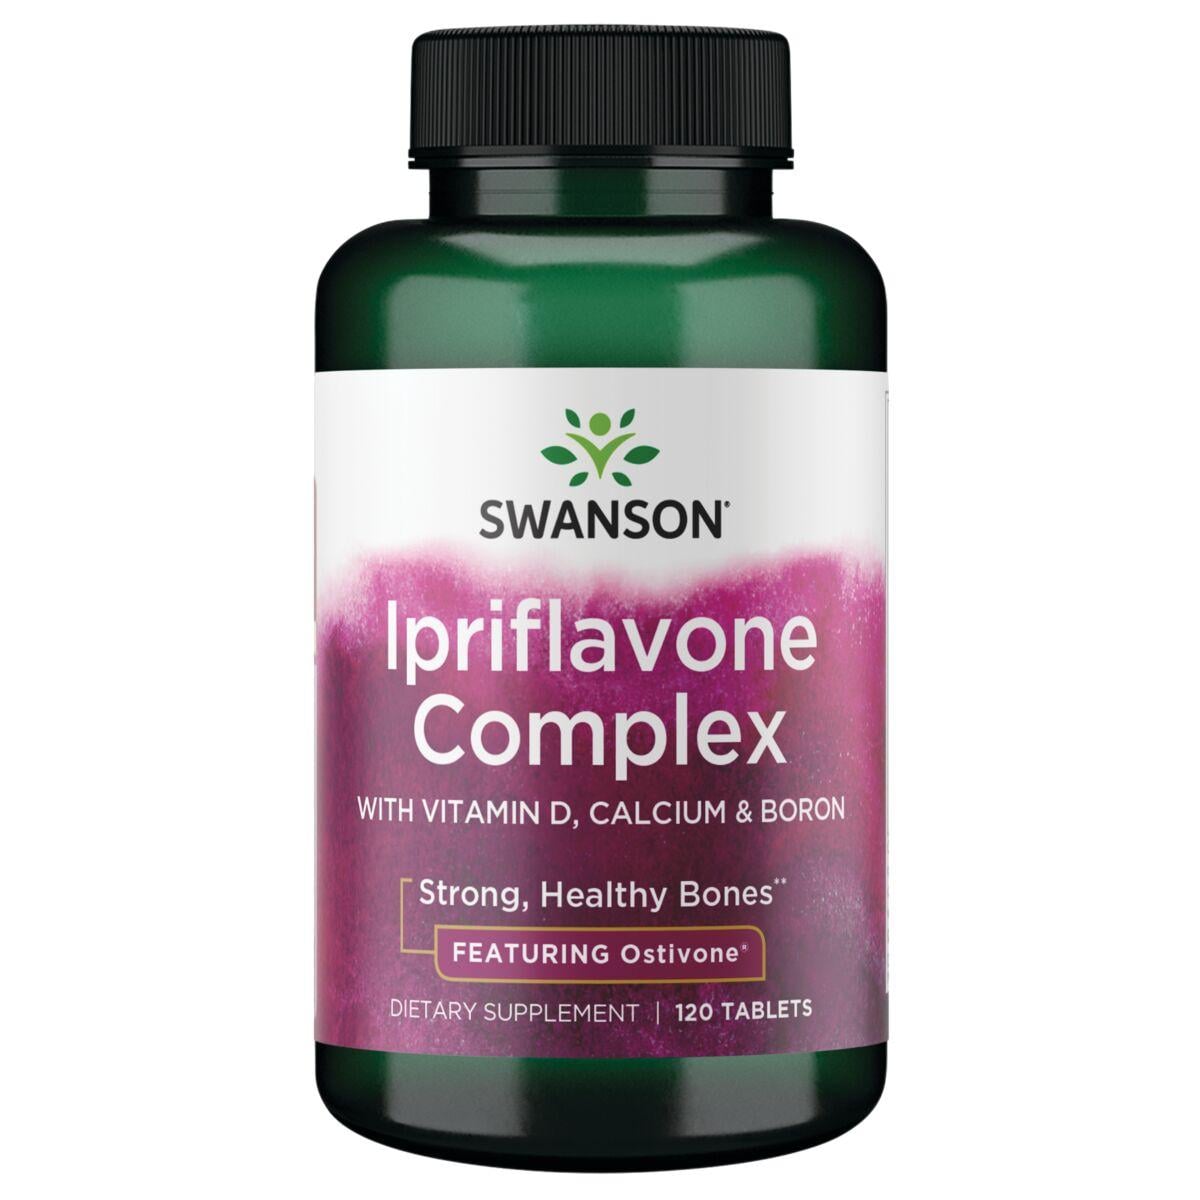 Swanson Premium Ipriflavone Complex - Featuring Ostivone Supplement Vitamin | 120 Tabs